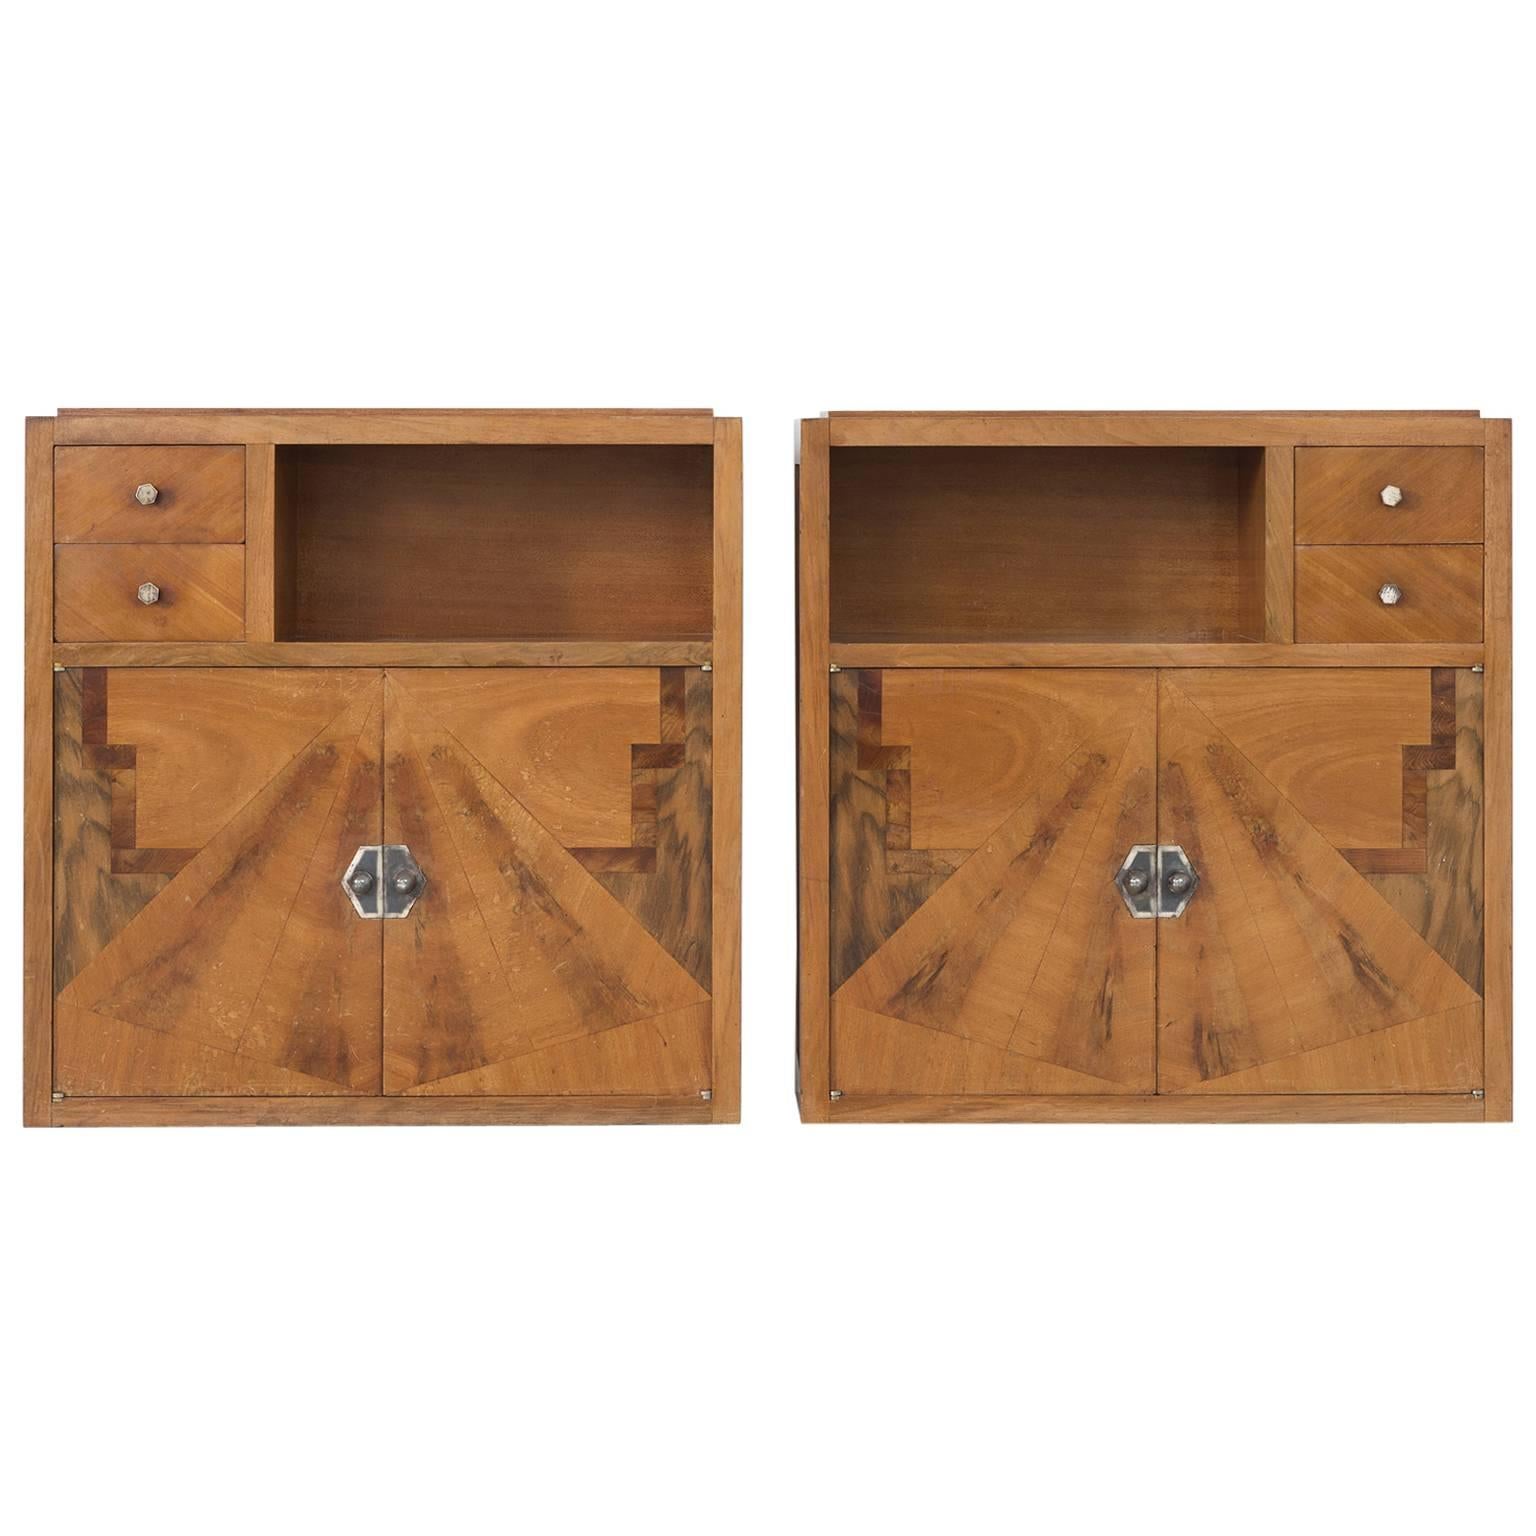 Set of Two Art Deco Nightstands with Wooden Inlayed Doors